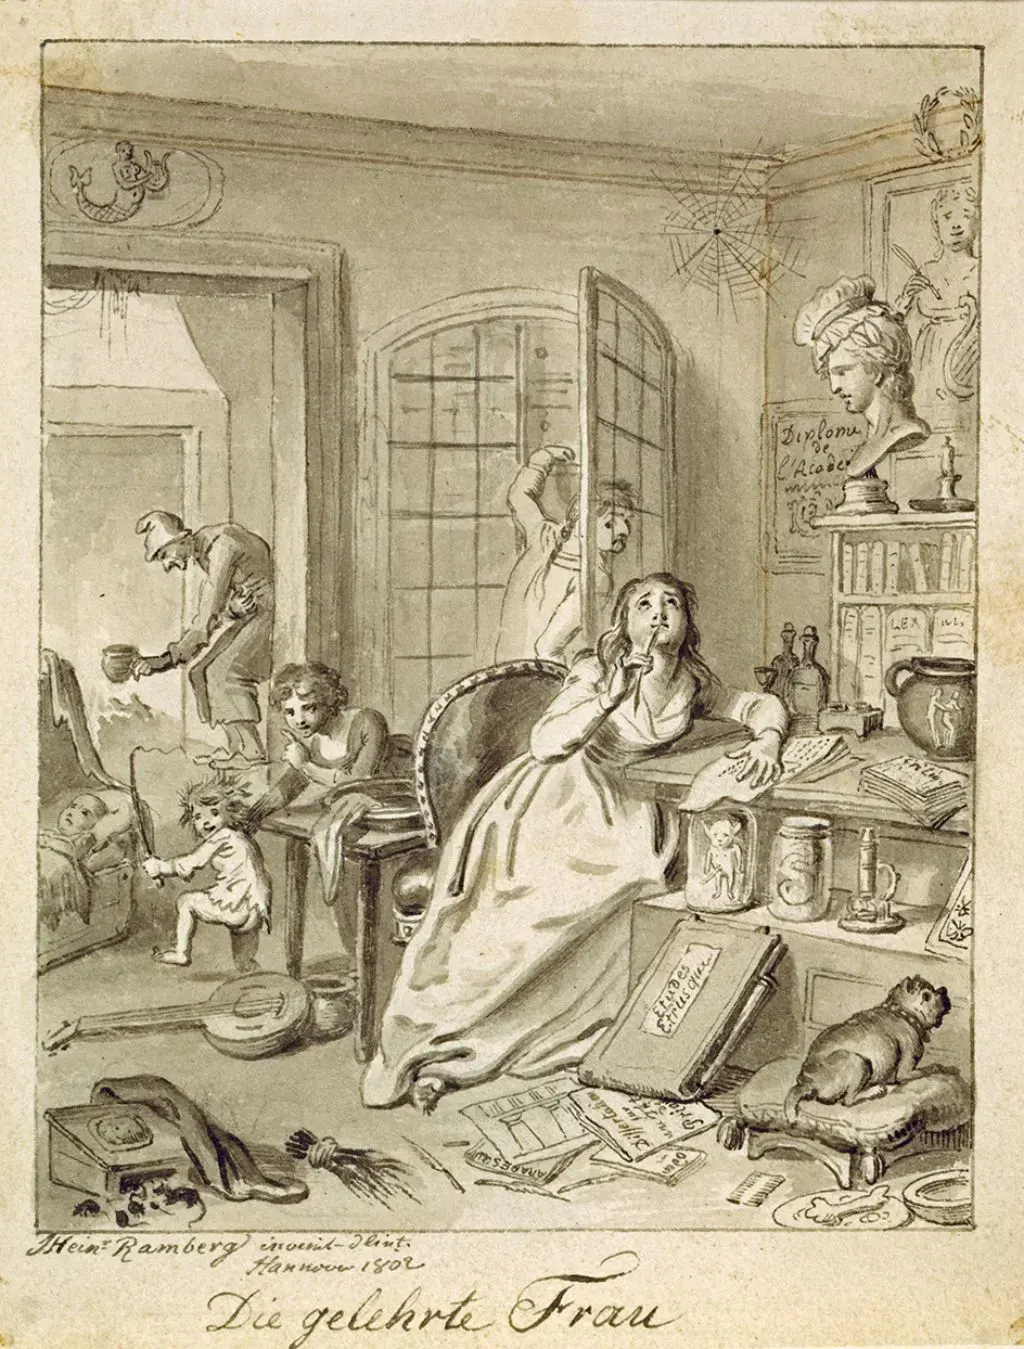 Gemälde: Kopf in den Wolken, Familie im Elend - so zeichnet Johann Heinrich Ramberg 1802 "Die gelehrte Frau"